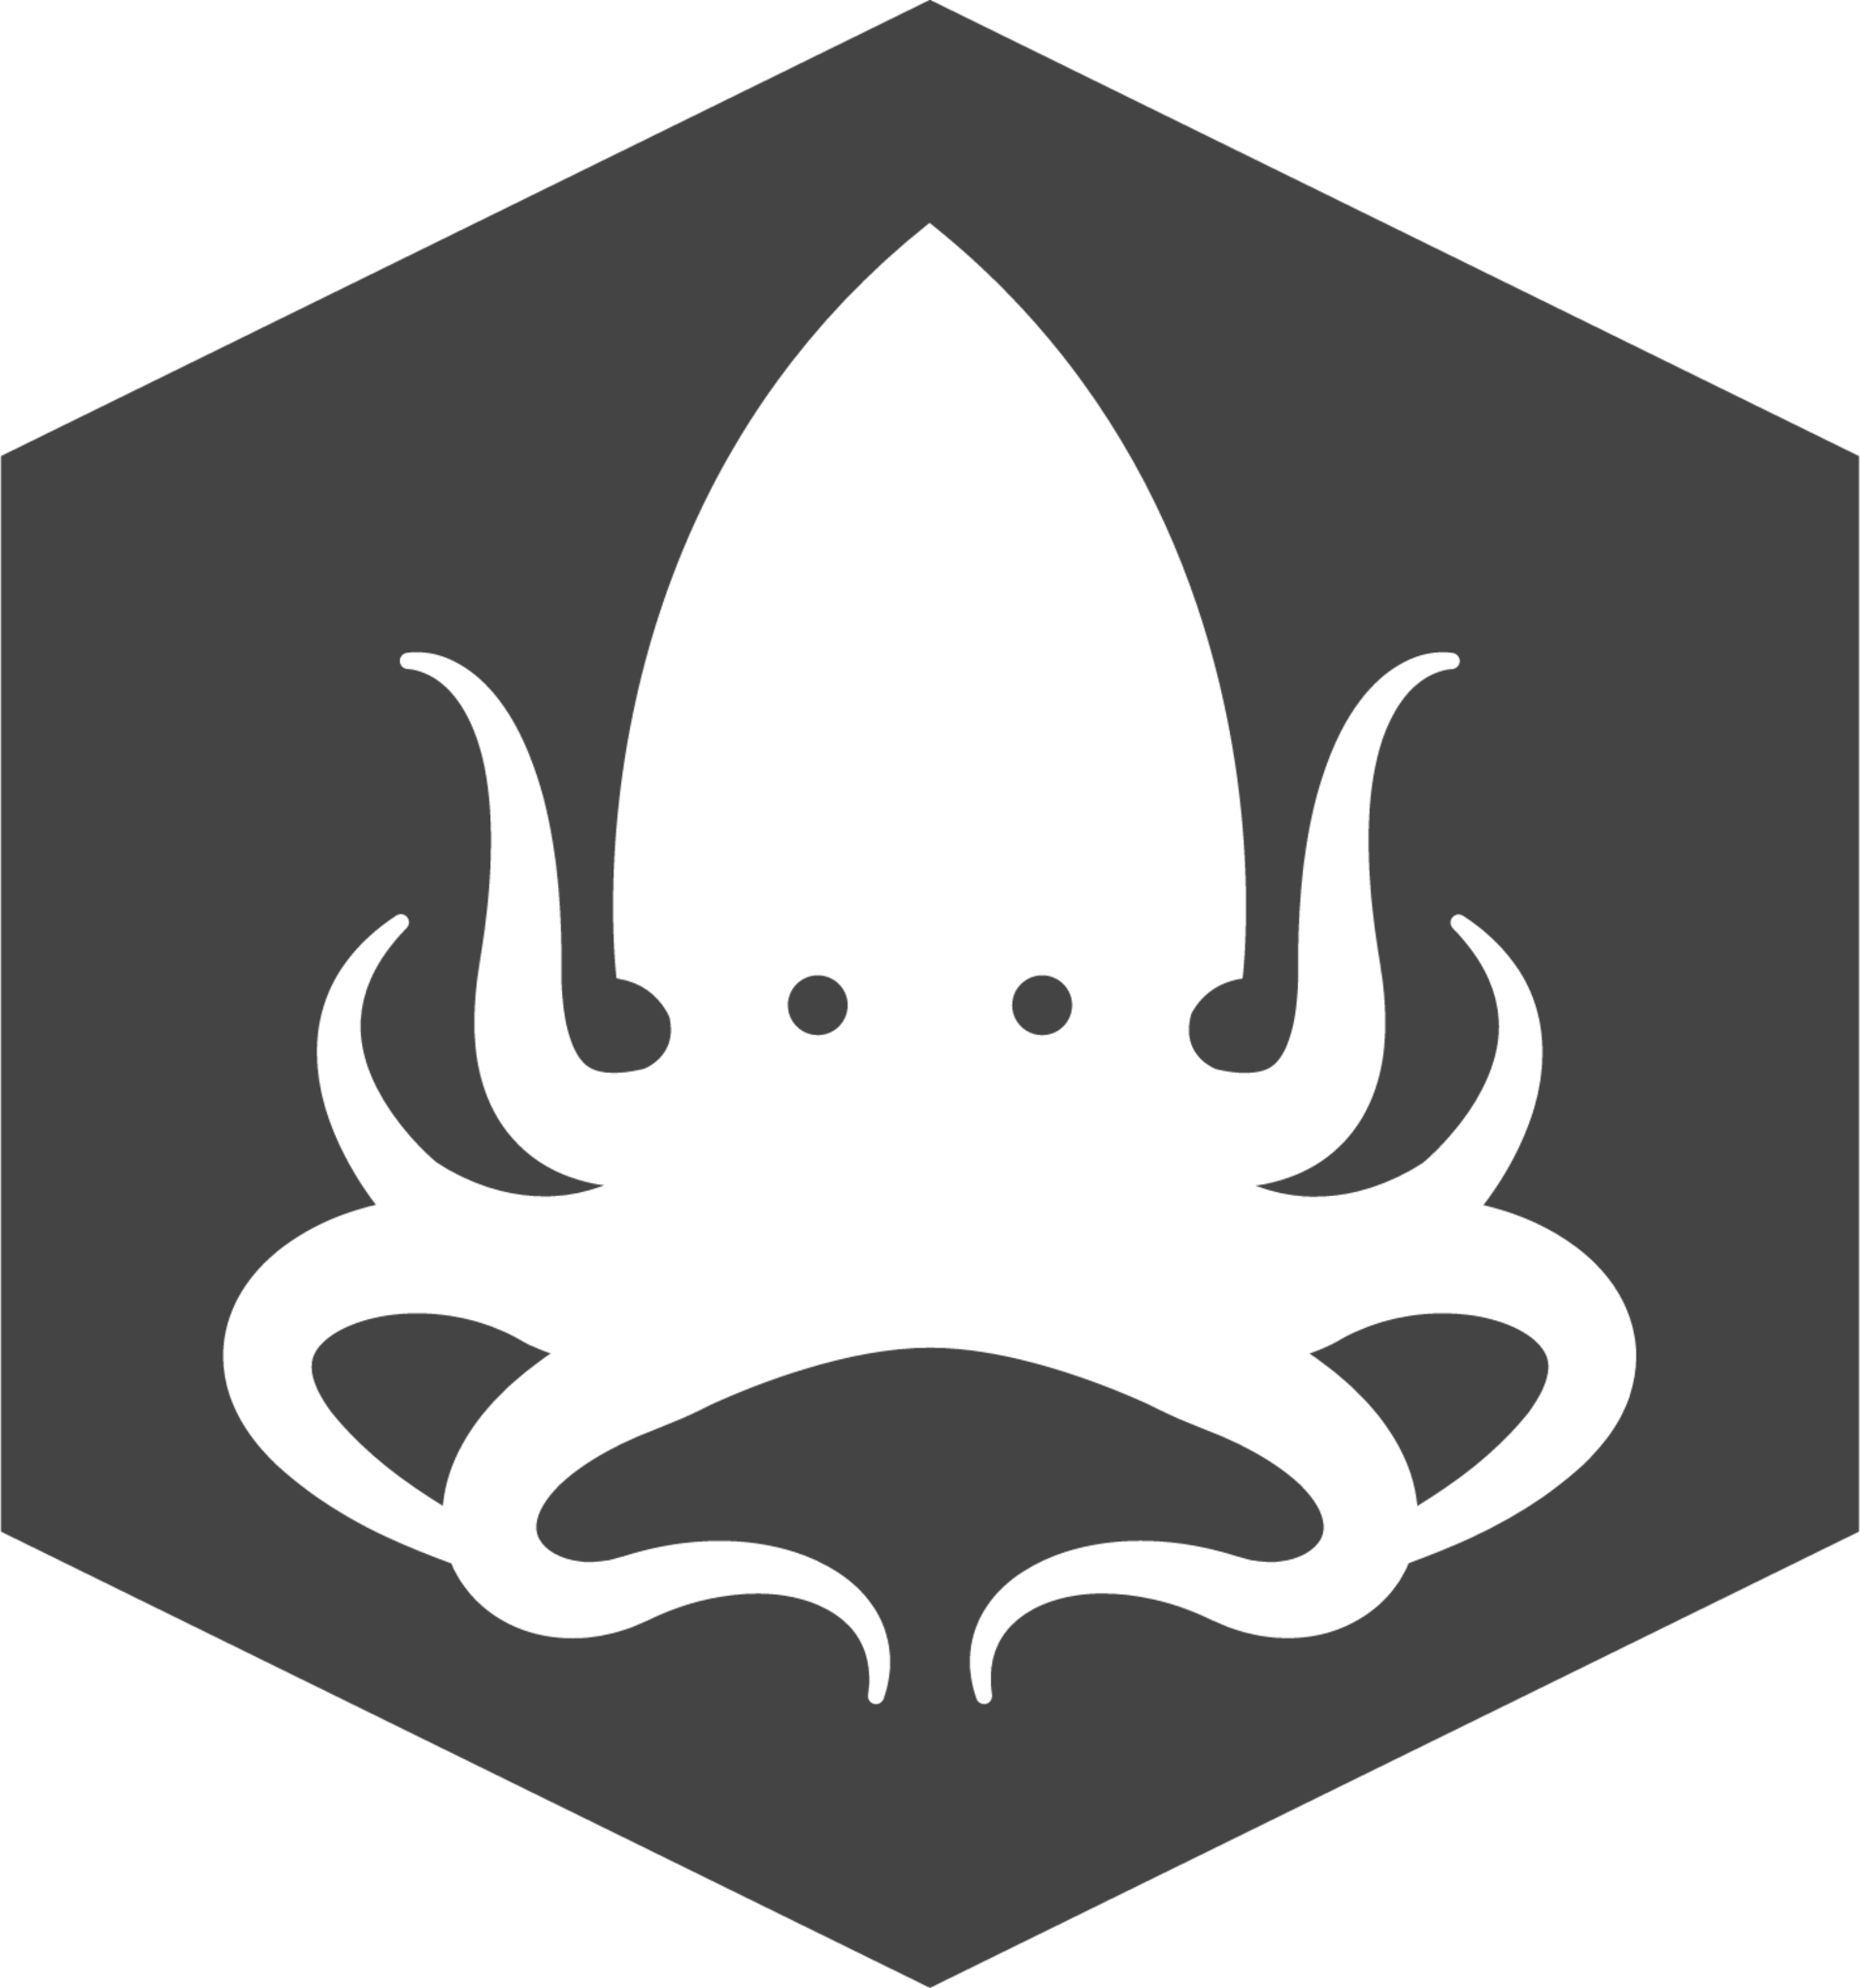 krakenjs badge icon